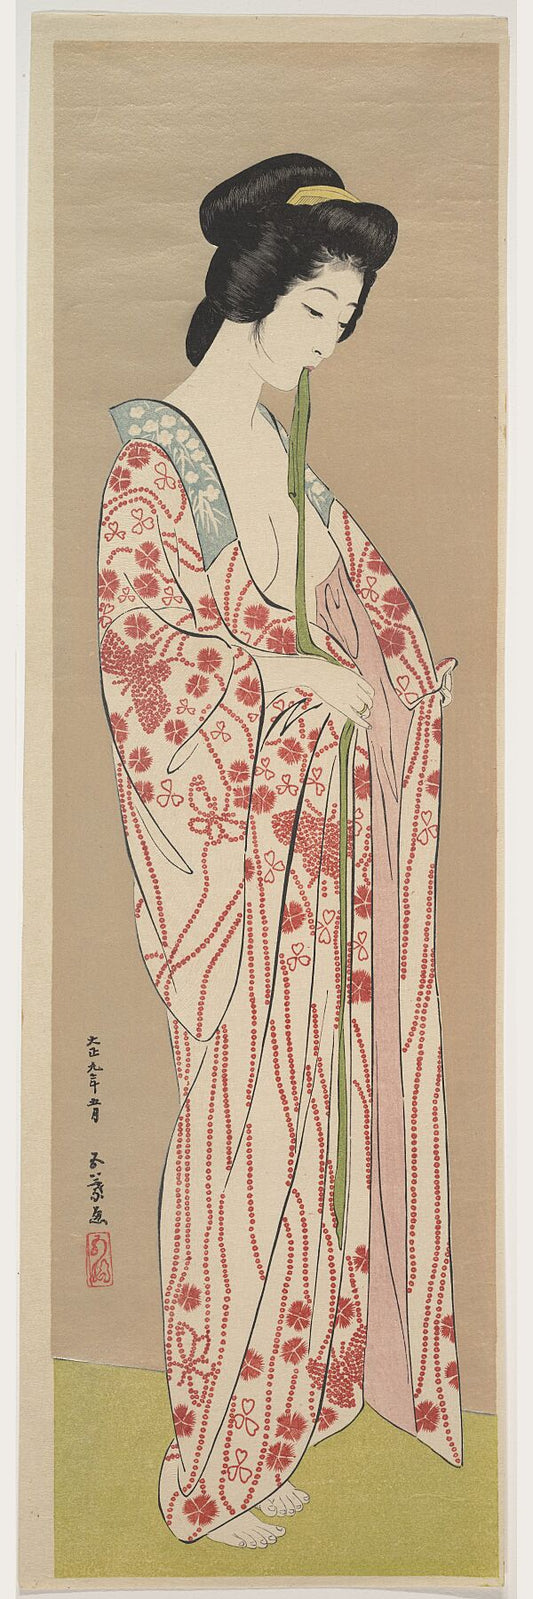 Woman Dressing by Goyō Hashiguchi - 1920